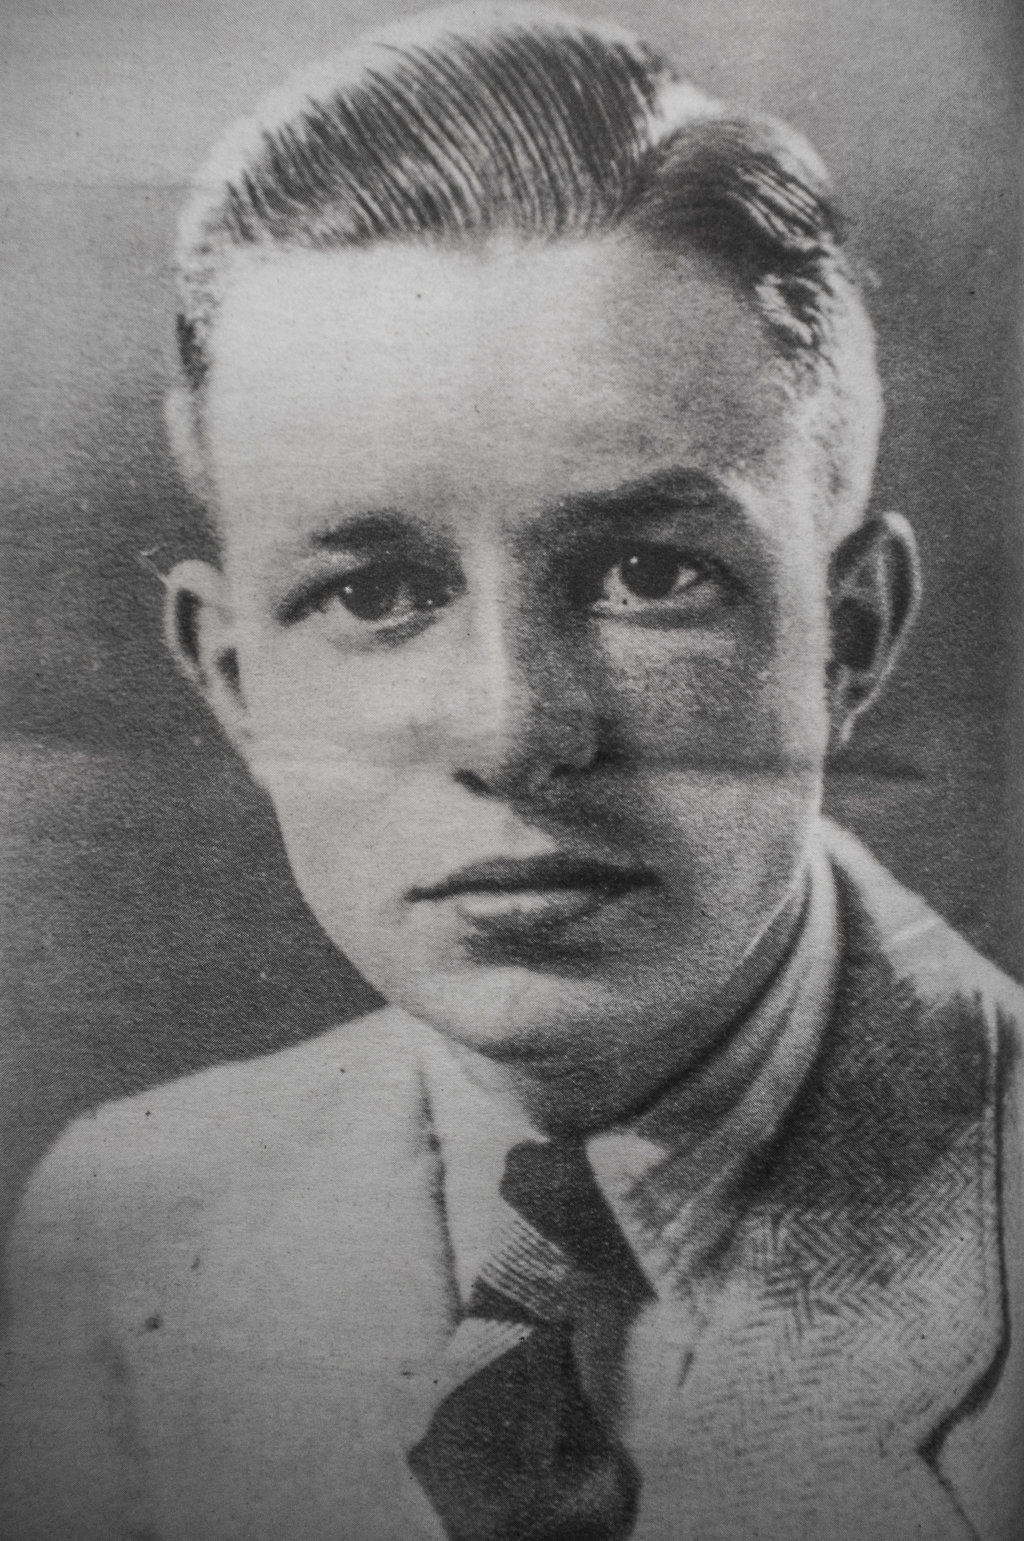 Kor Bonte (1924-1944).